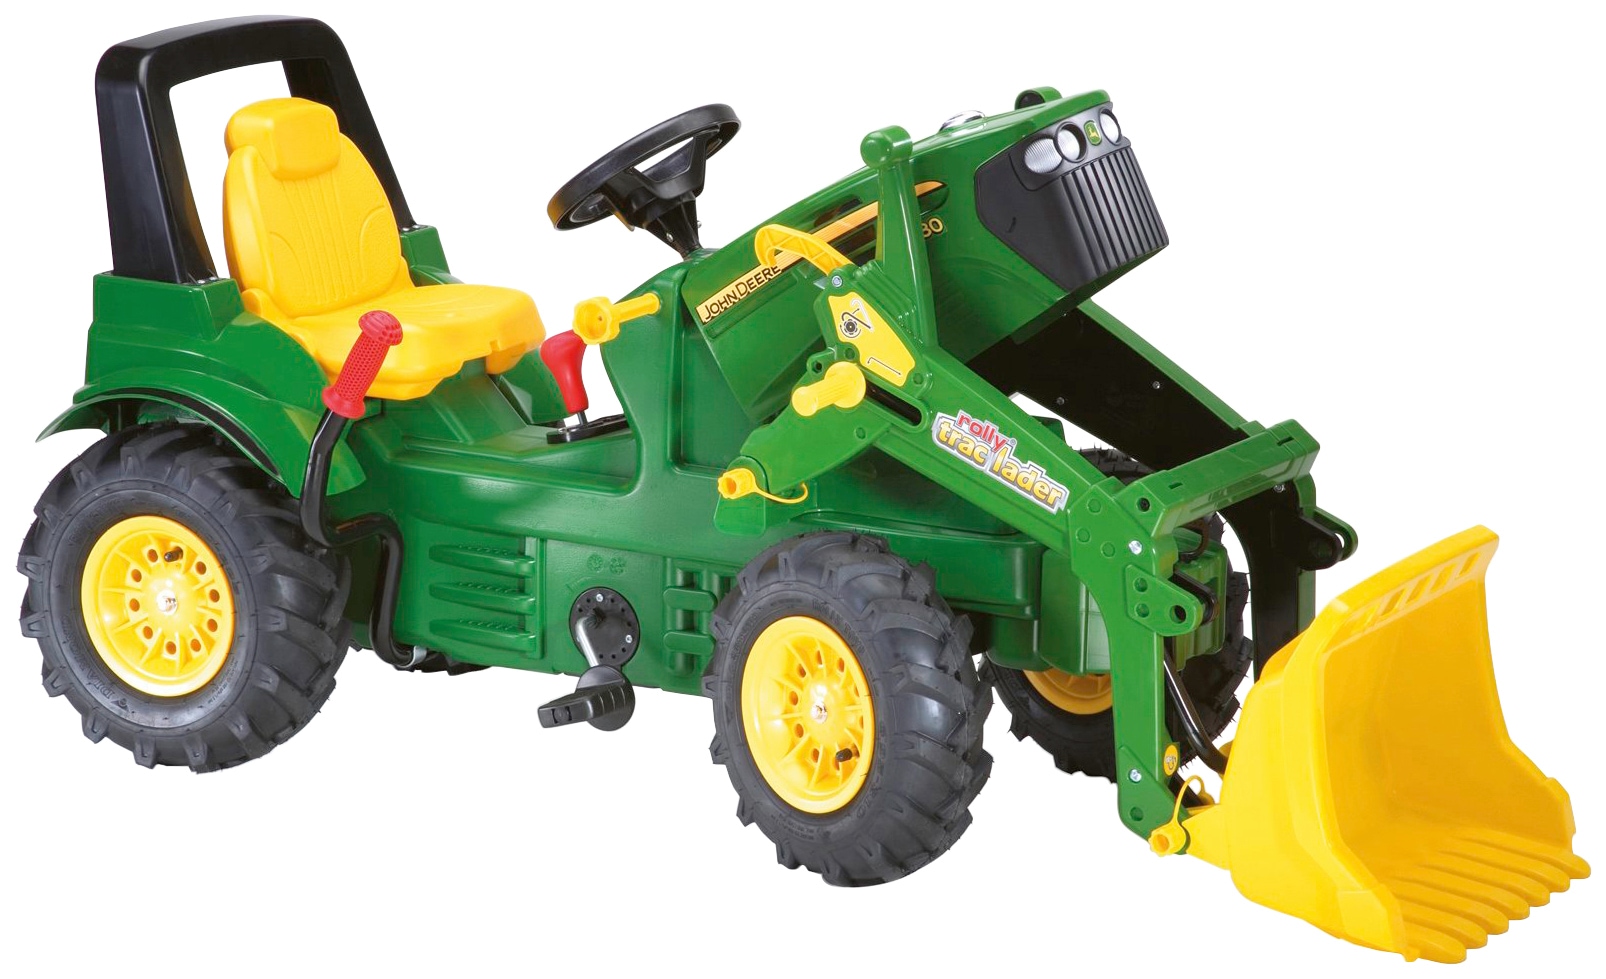 rolly toys® Tretfahrzeug »John Deere 7930«, Kindertraktor mit Lader und Luftbereifung